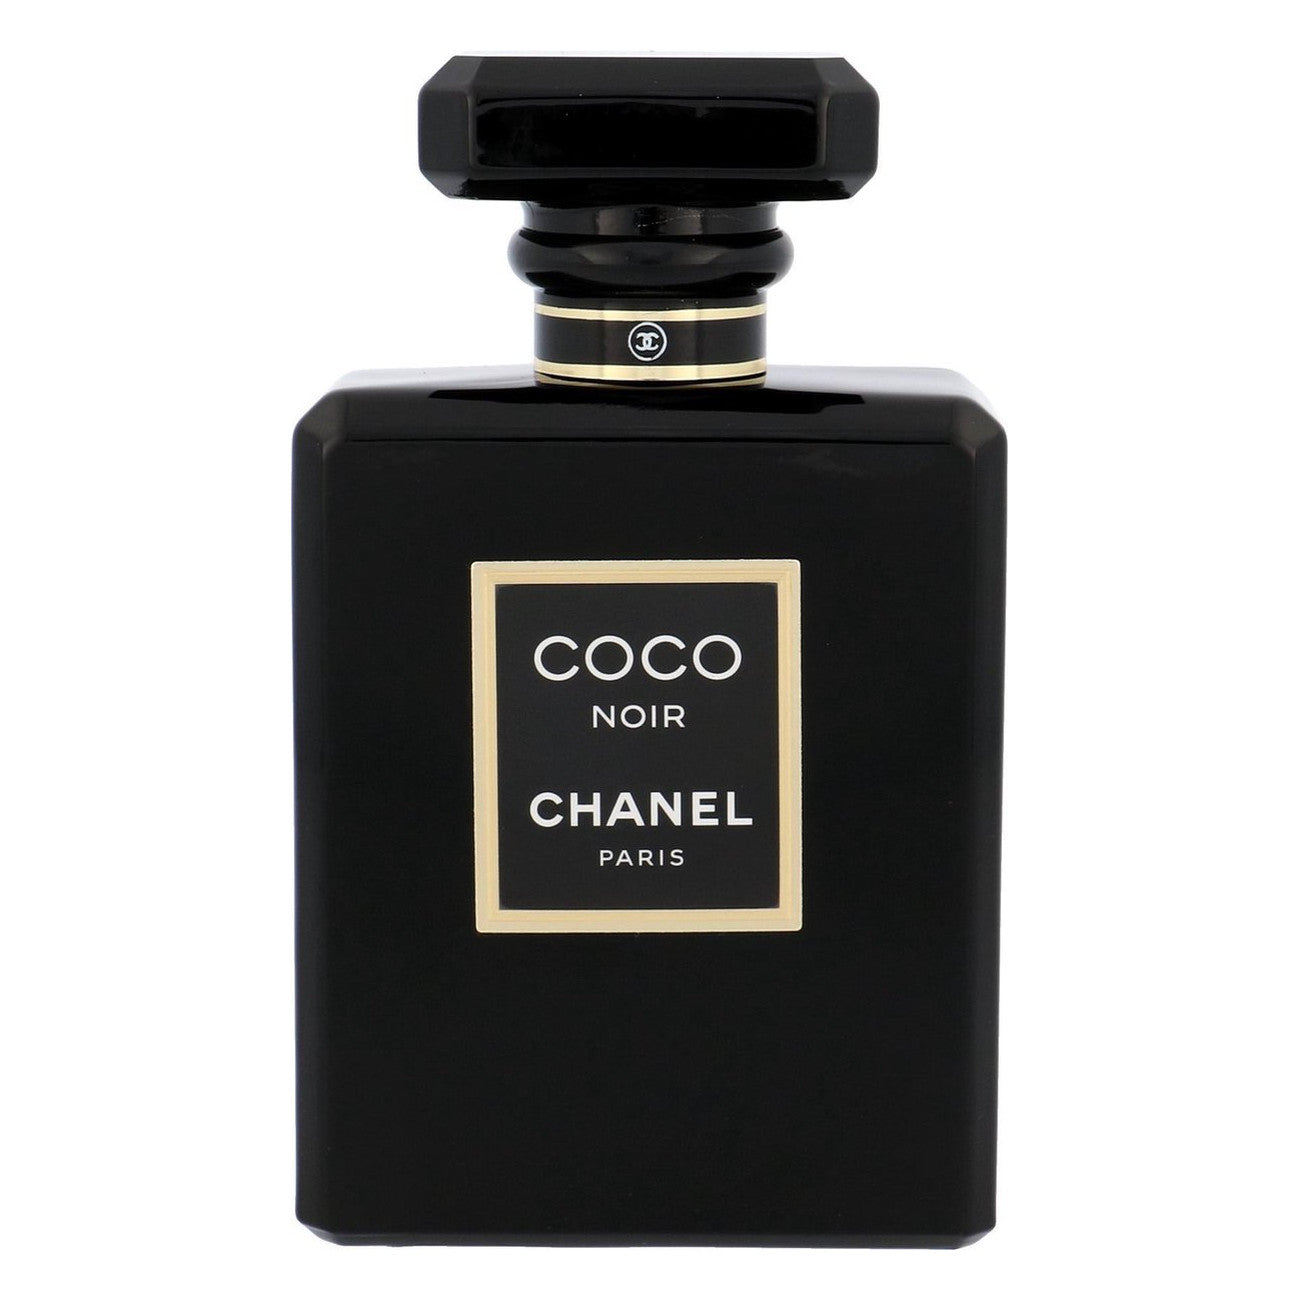 Chanel Coco Noir for Women - Eau de Parfum, 100 ml